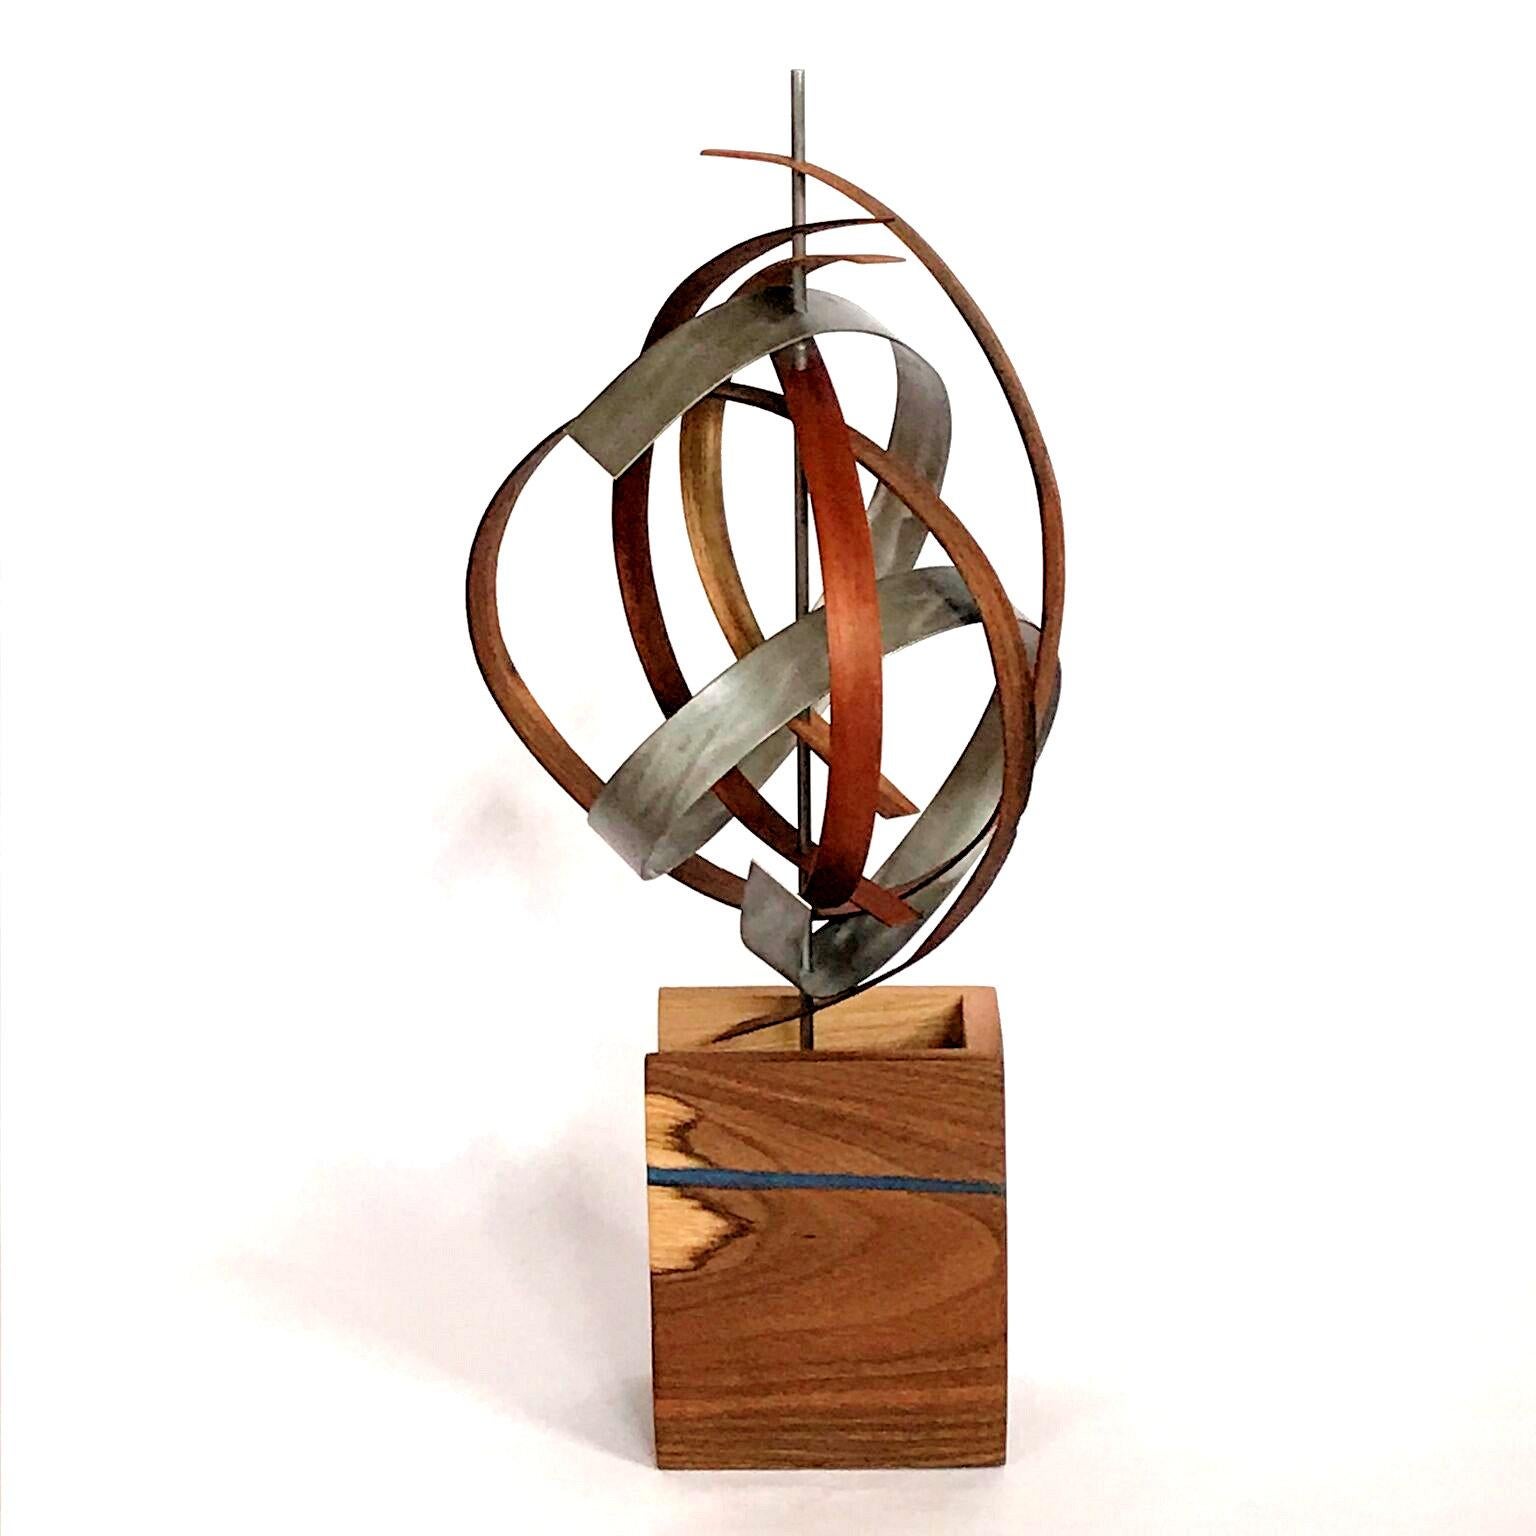 Linenkugel Modern Wood Metal Free-Standing Sculpture Original Contemporary Art - Mixed Media Art by Jeff Linenkugel